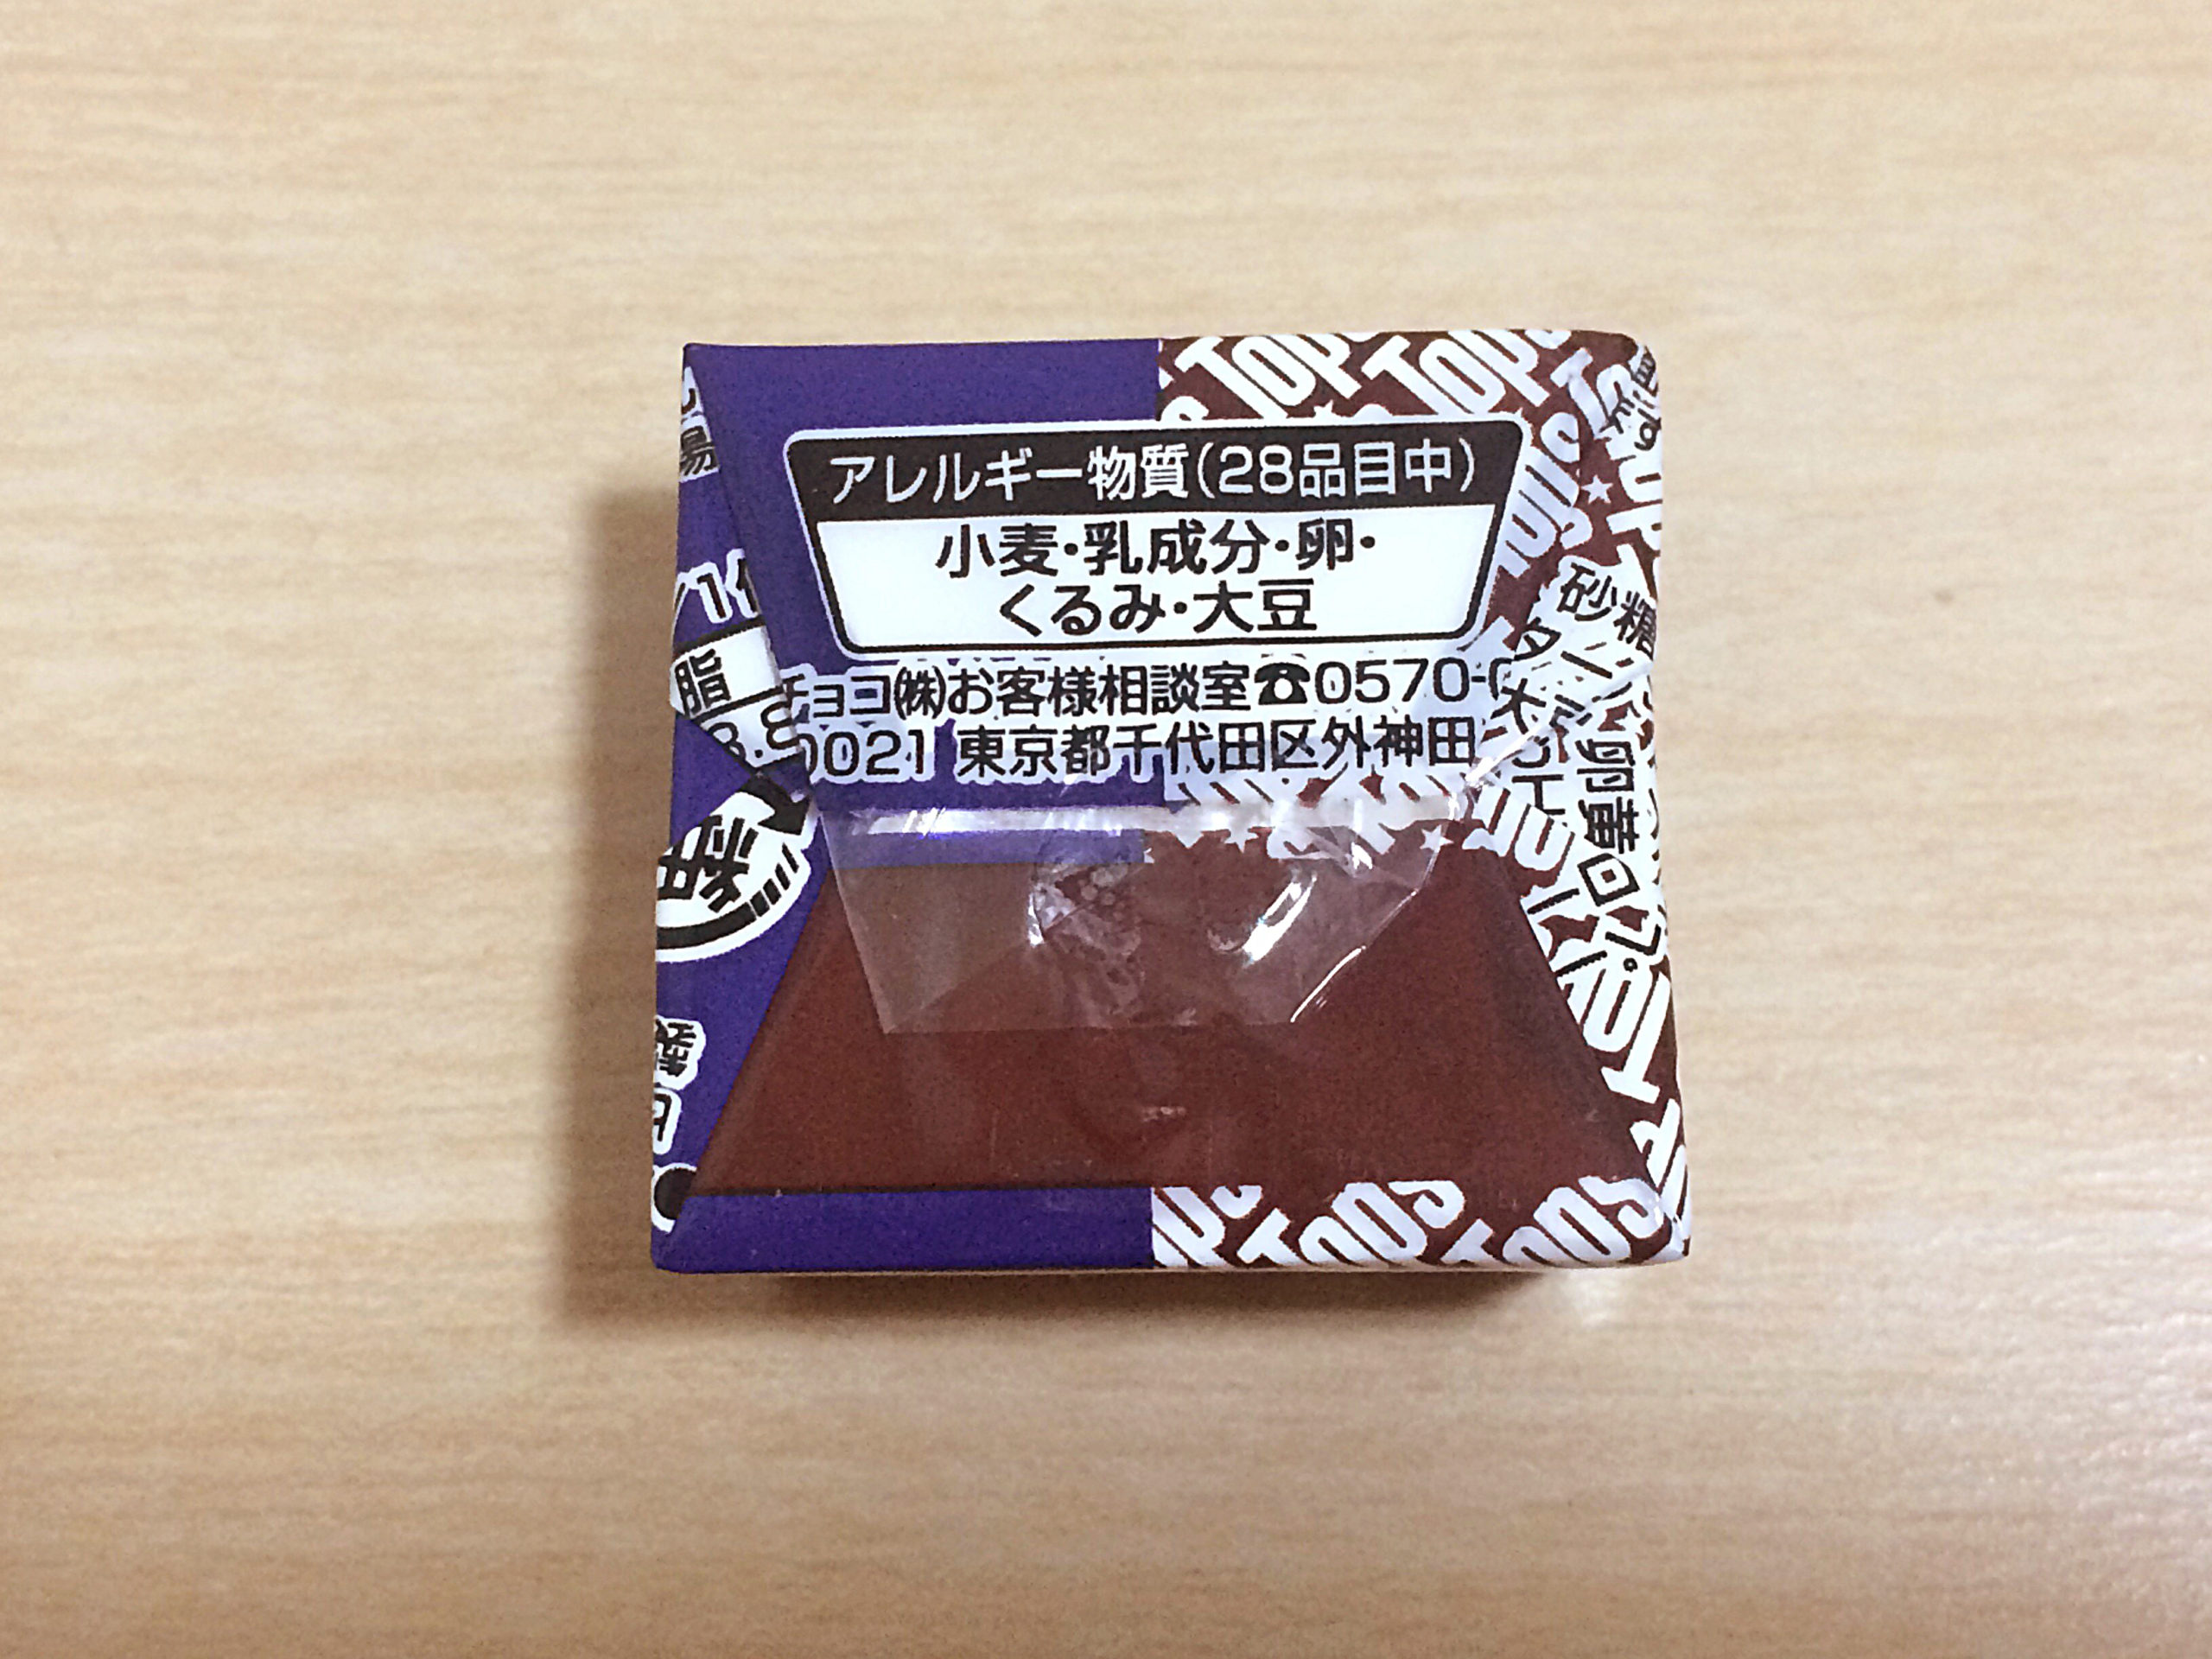 チロル チョコレートケーキ Nyainの新商品